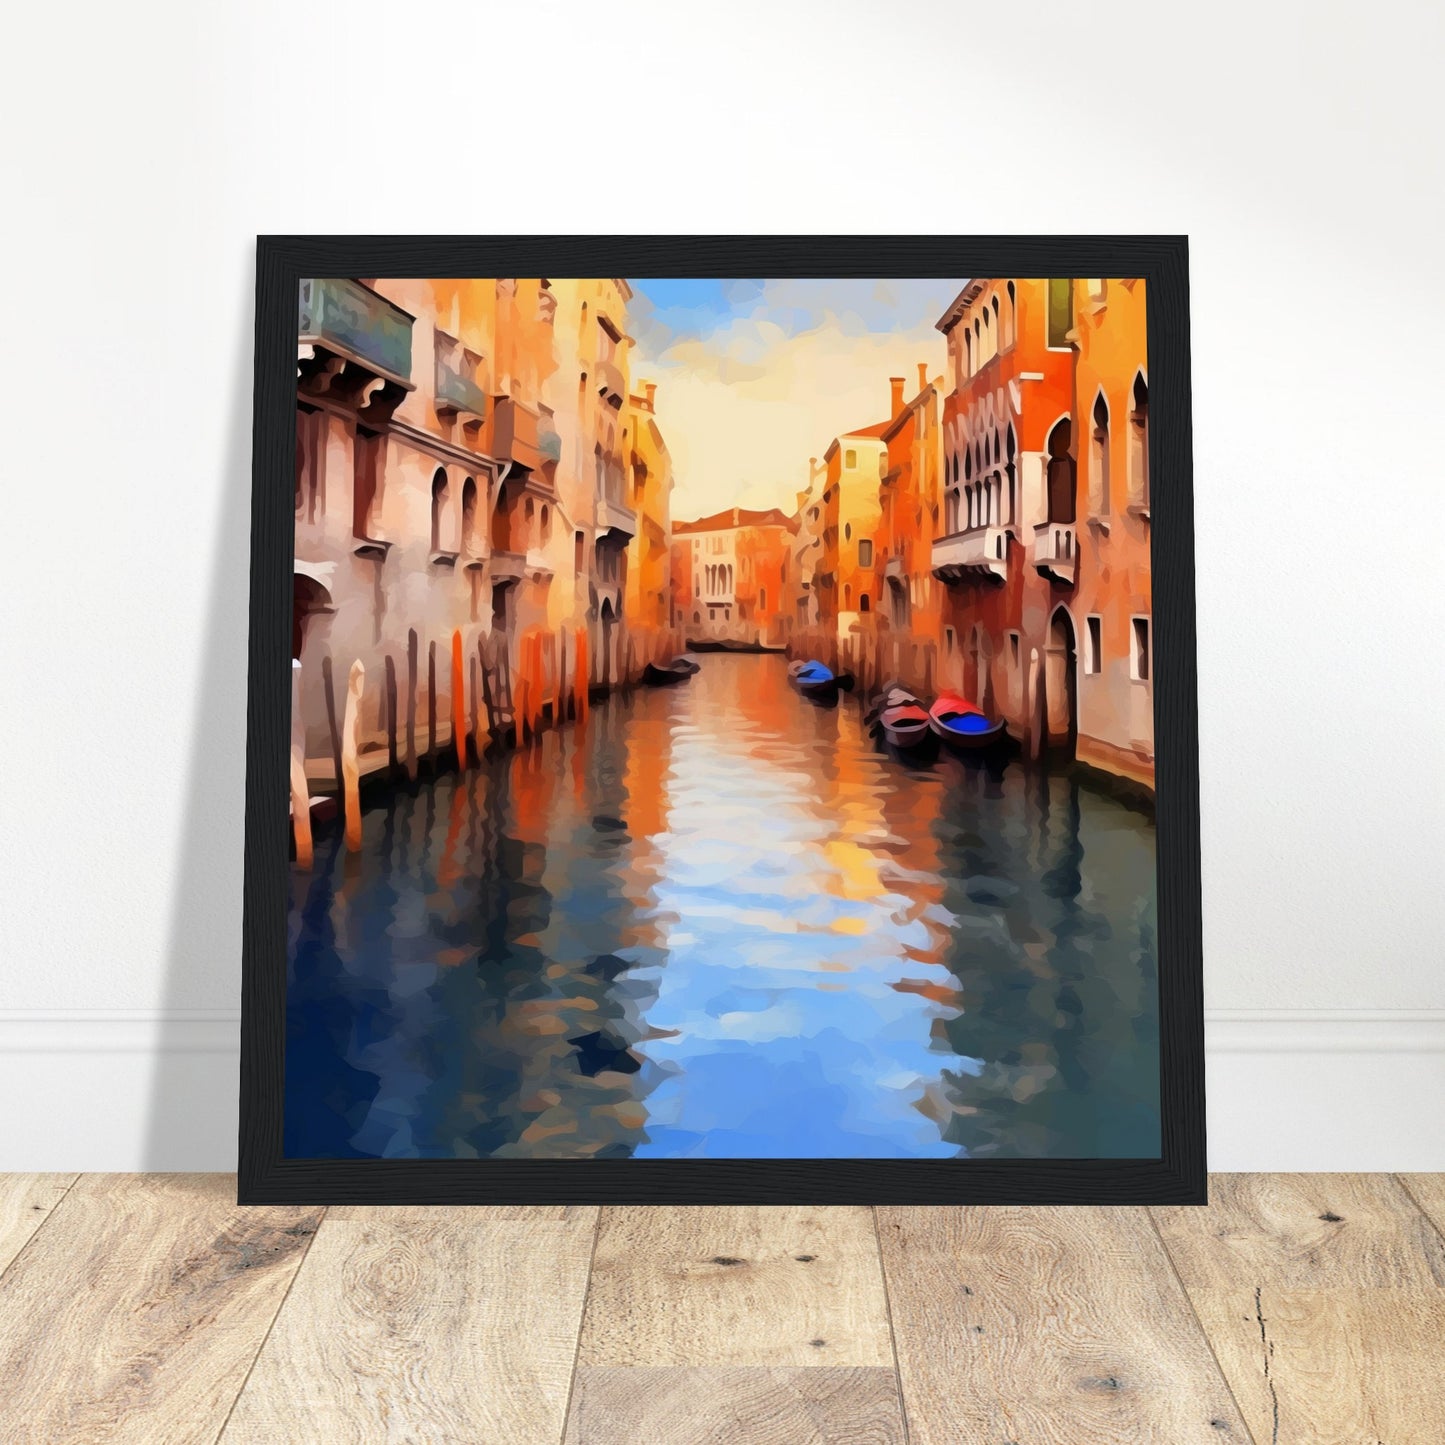 Venice Canals Artwork - Print Room Ltd No Frame Selected 50x50 cm / 20x20"